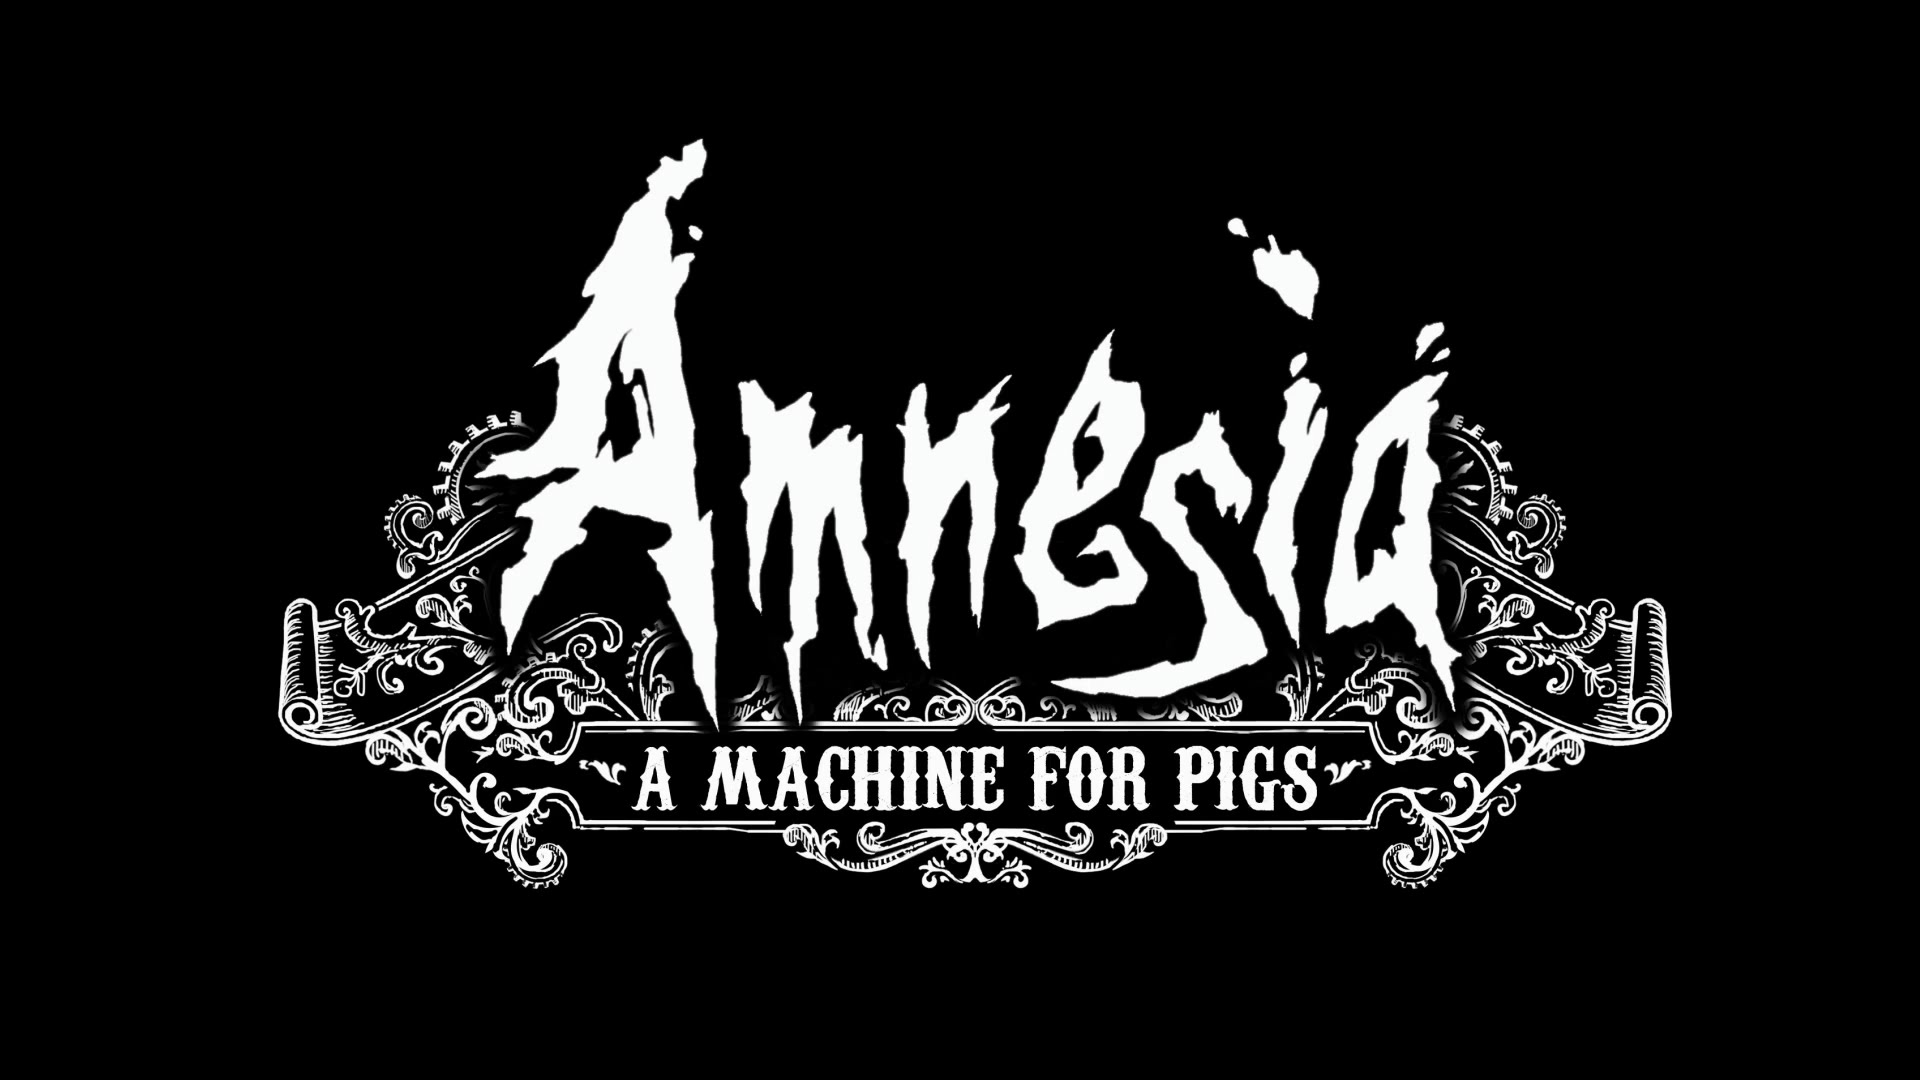 El sopar dels porcs. Amnesia: A machine for pigs #11 de Nil66